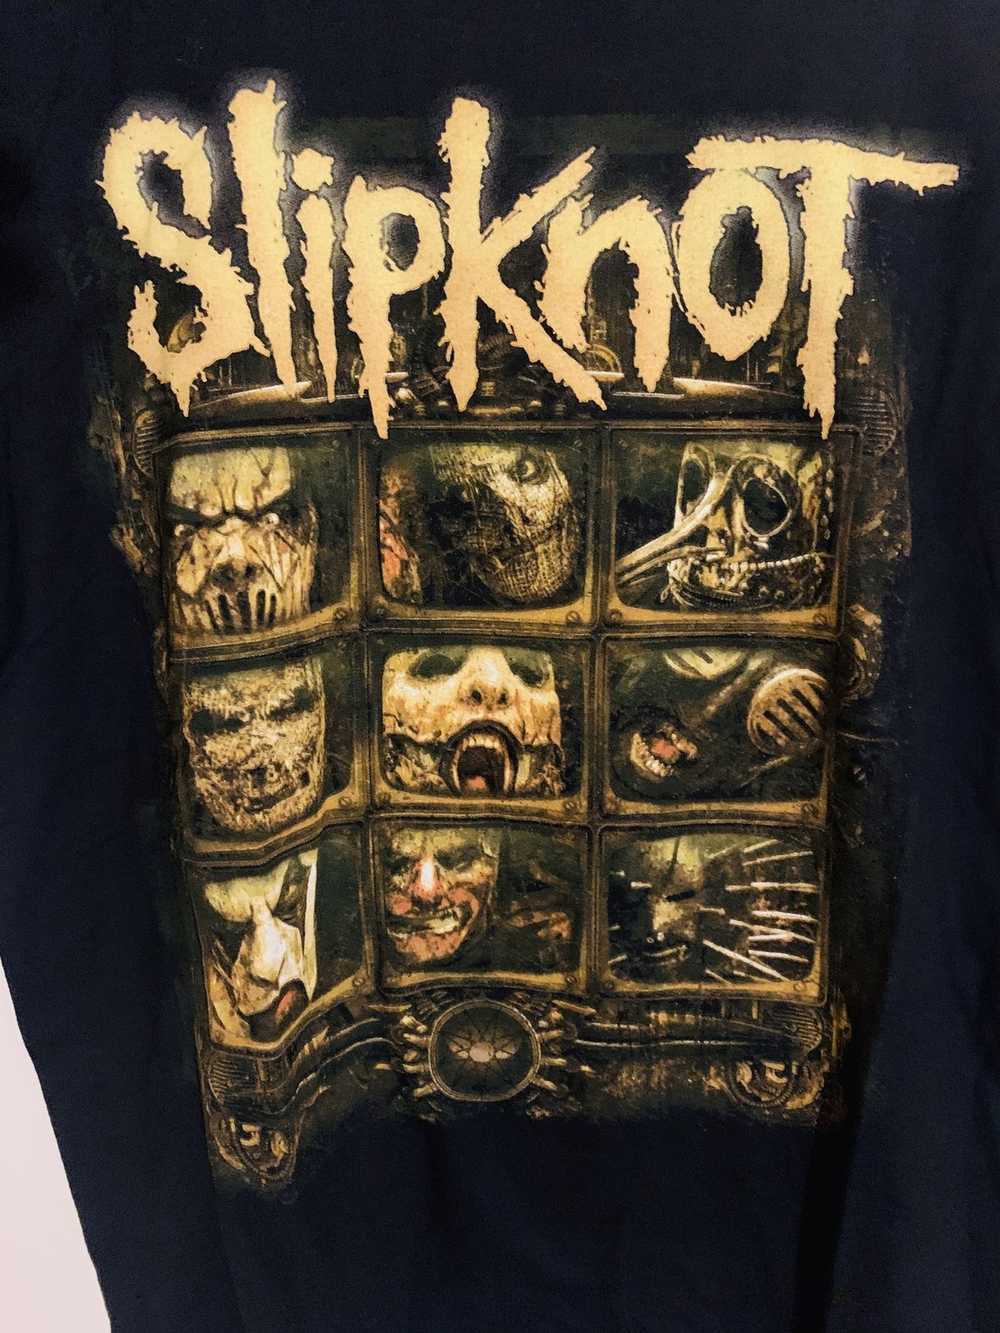 Slipknot × Vintage Vintage SlipKnot Tee Great - image 2